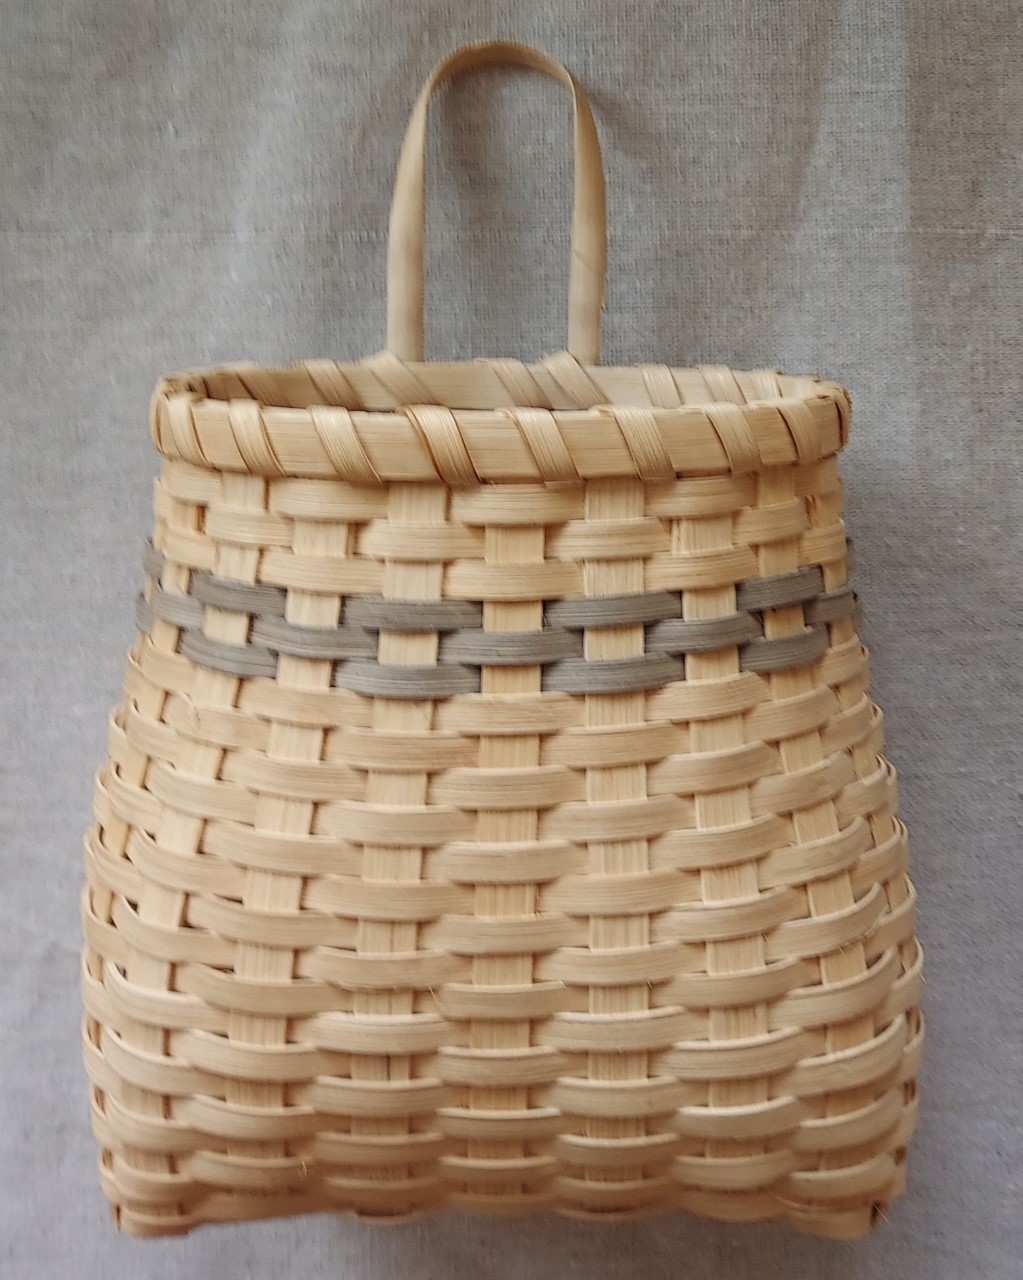 Basket Weaving 101 Kit - Adirondack Pack Basket